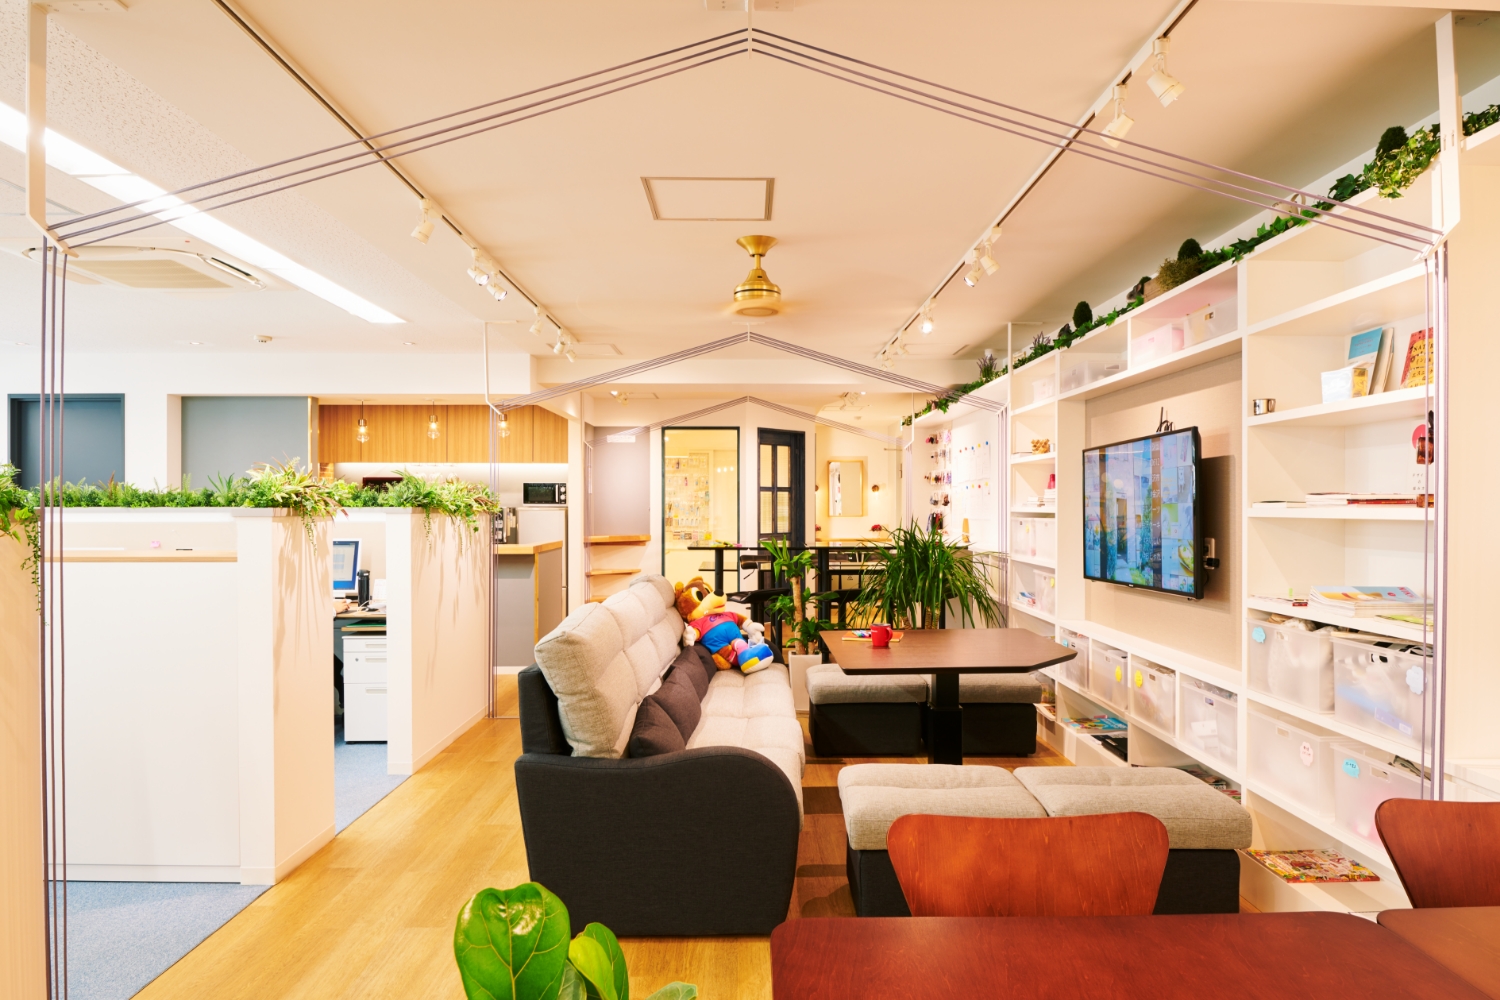 ミツキ オフィスデザイン 『リビング』をイメージしたオフィス空間　